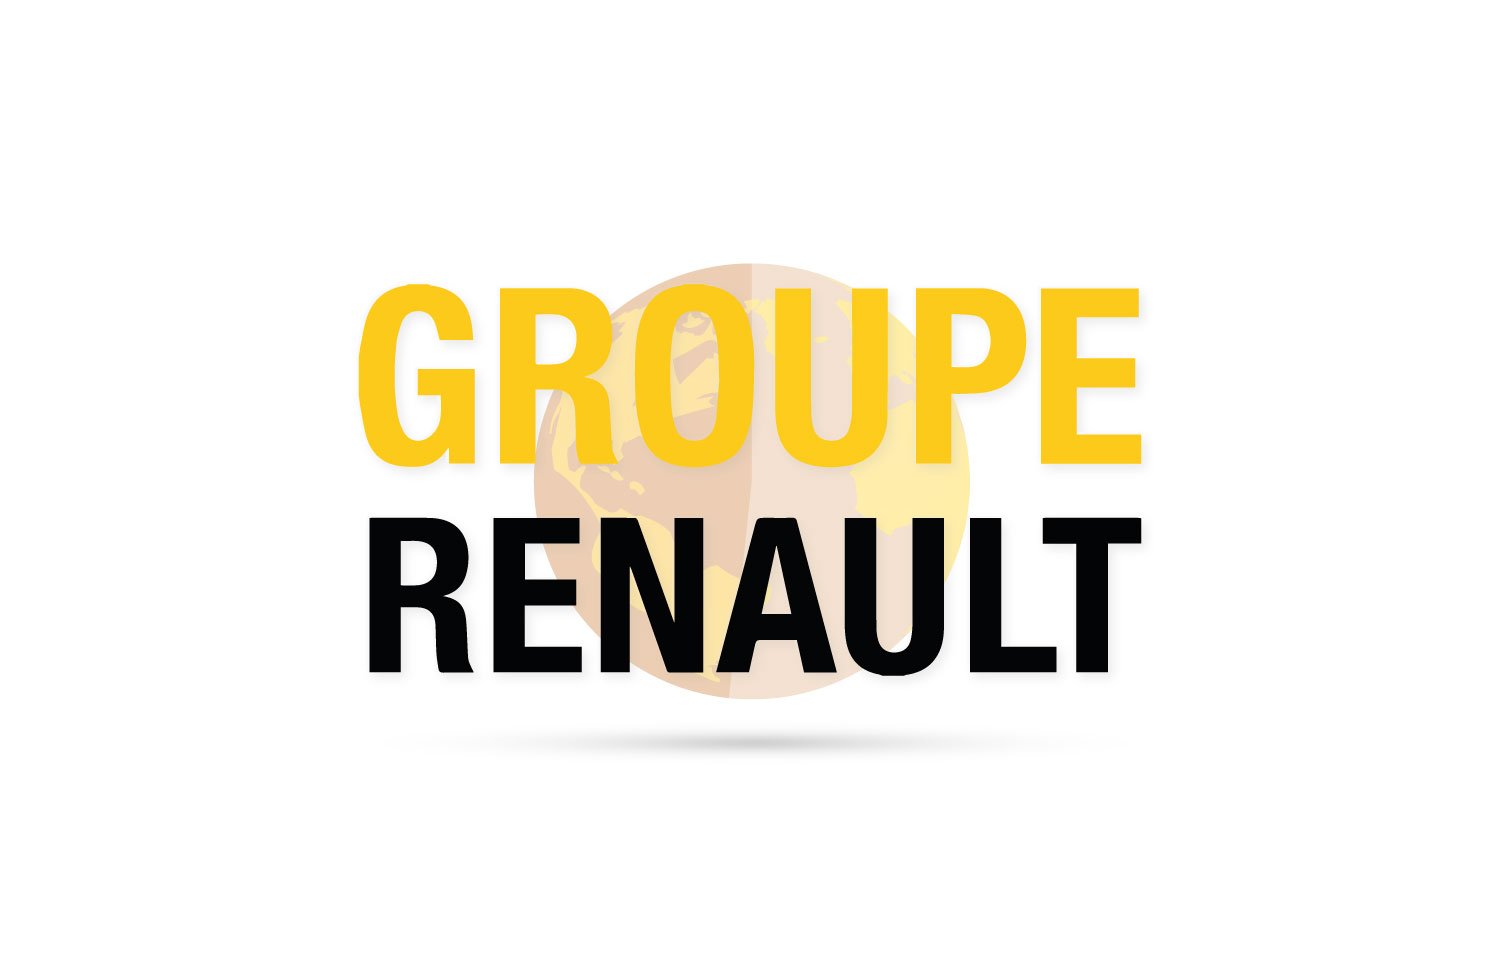 Wyniki Renault Groupe 2019